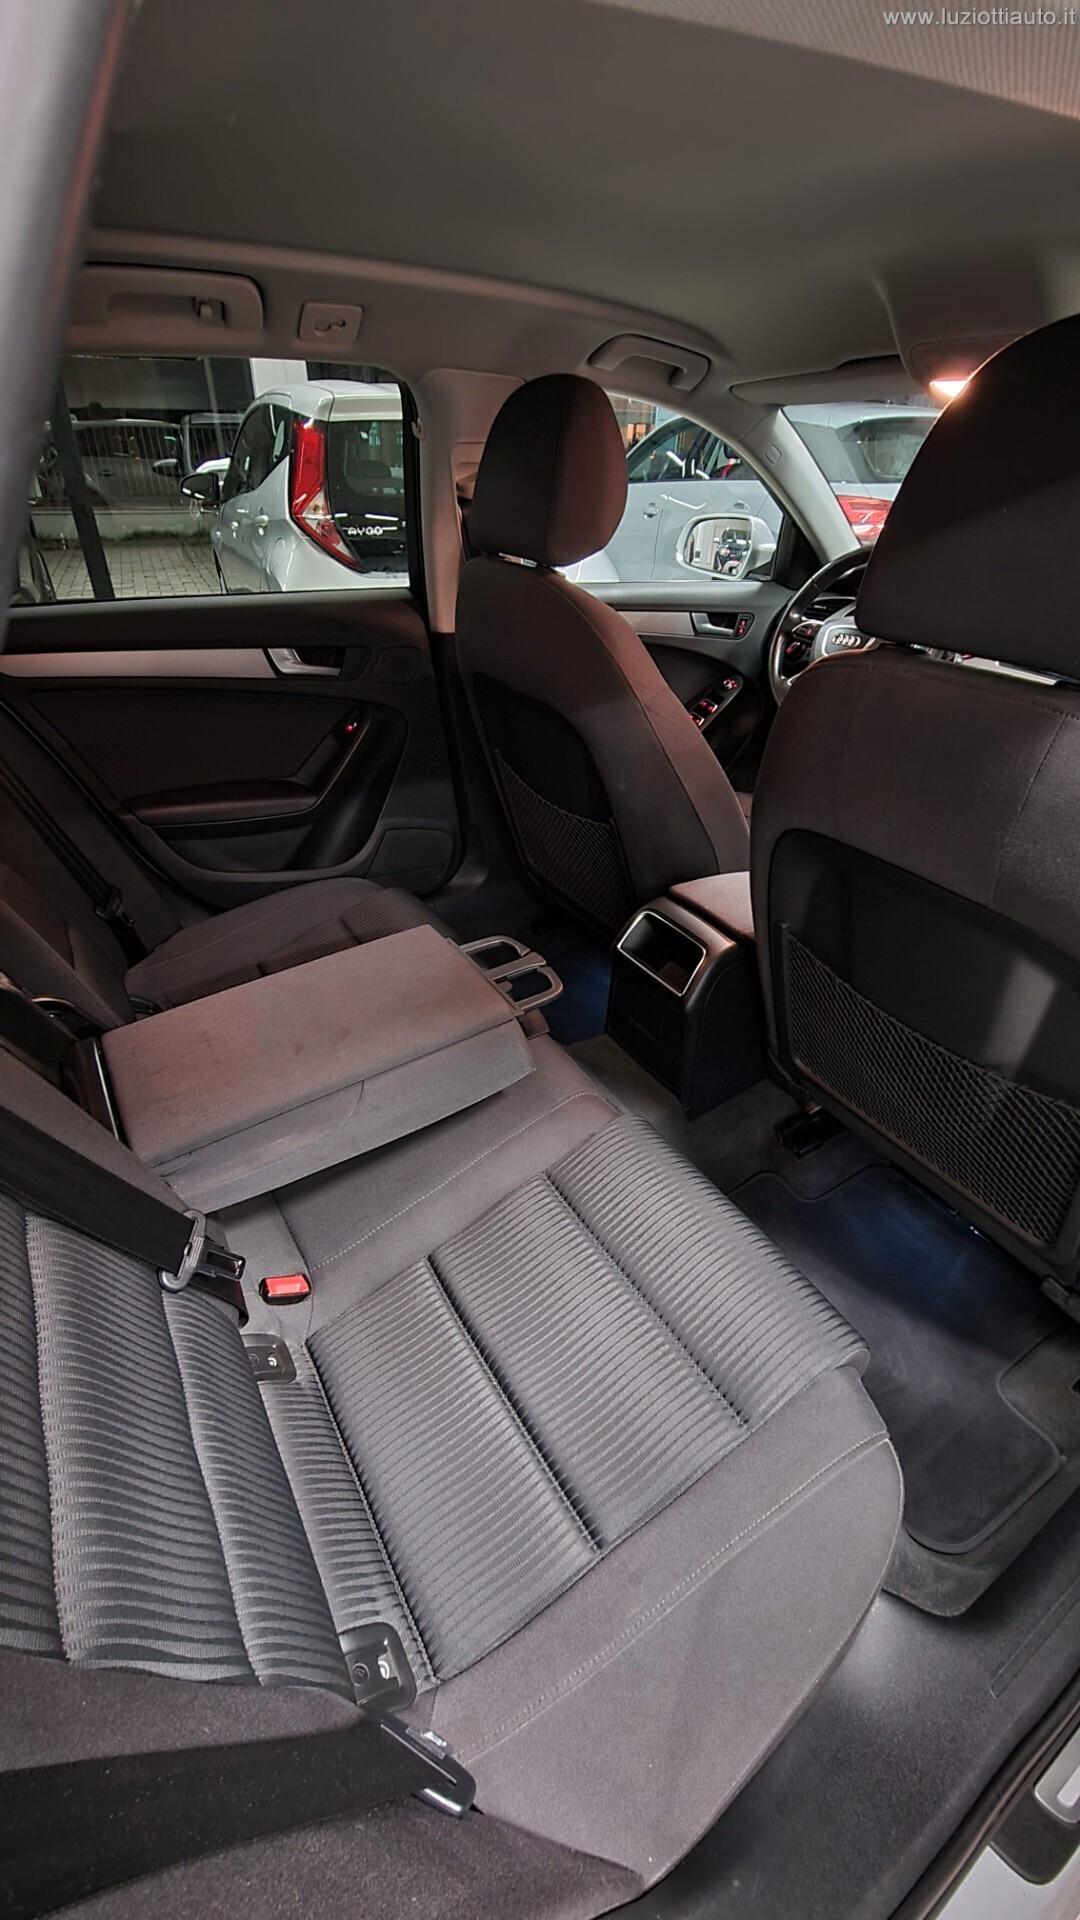 Audi A4 Avant 2.0 TDI 150 CV multitronic Advanced